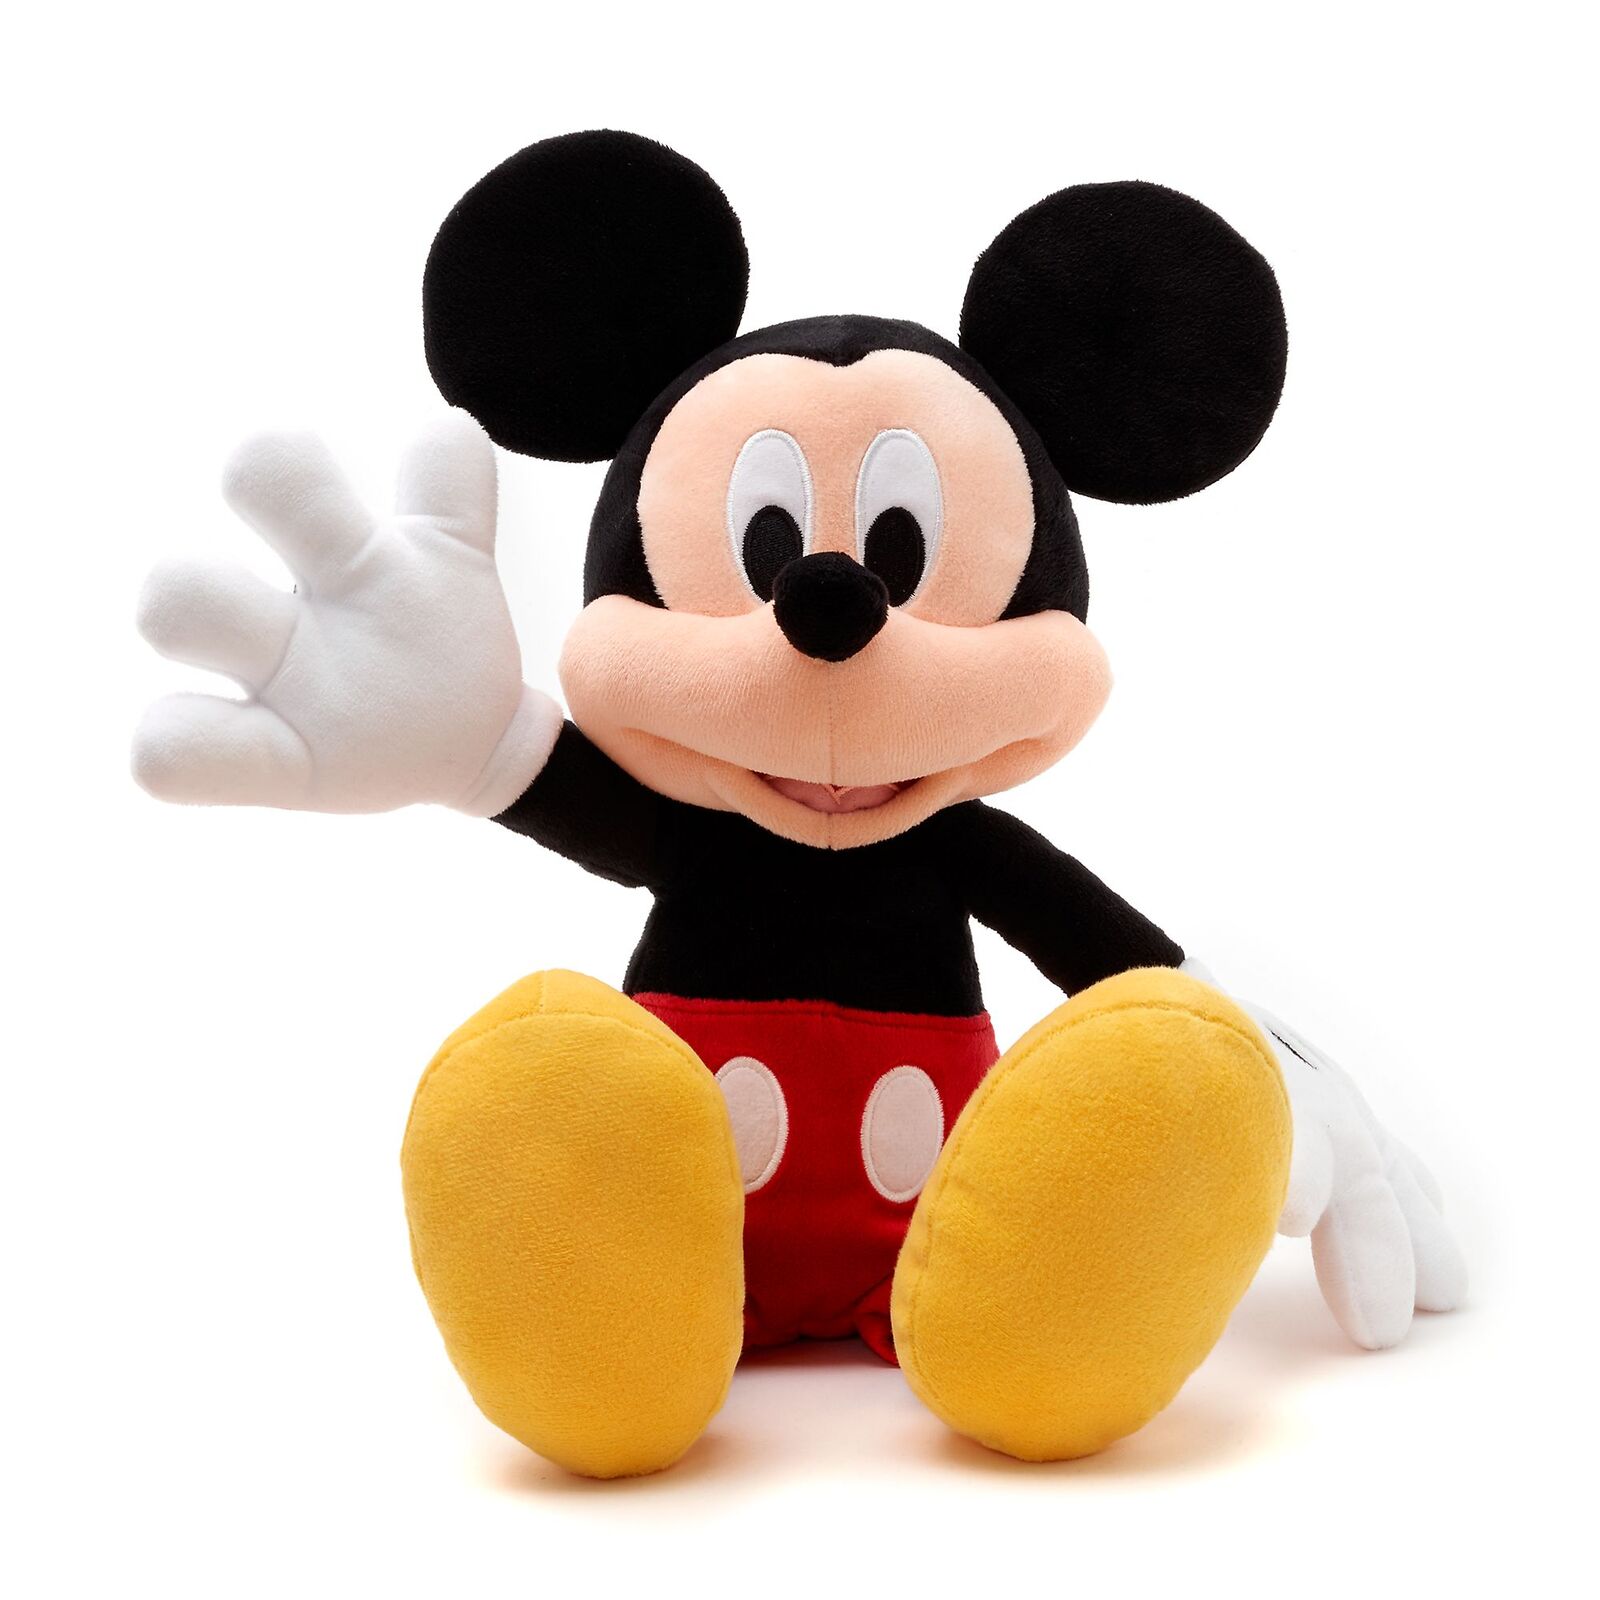 Mickey Mouse Plush Medium Genuine Disney